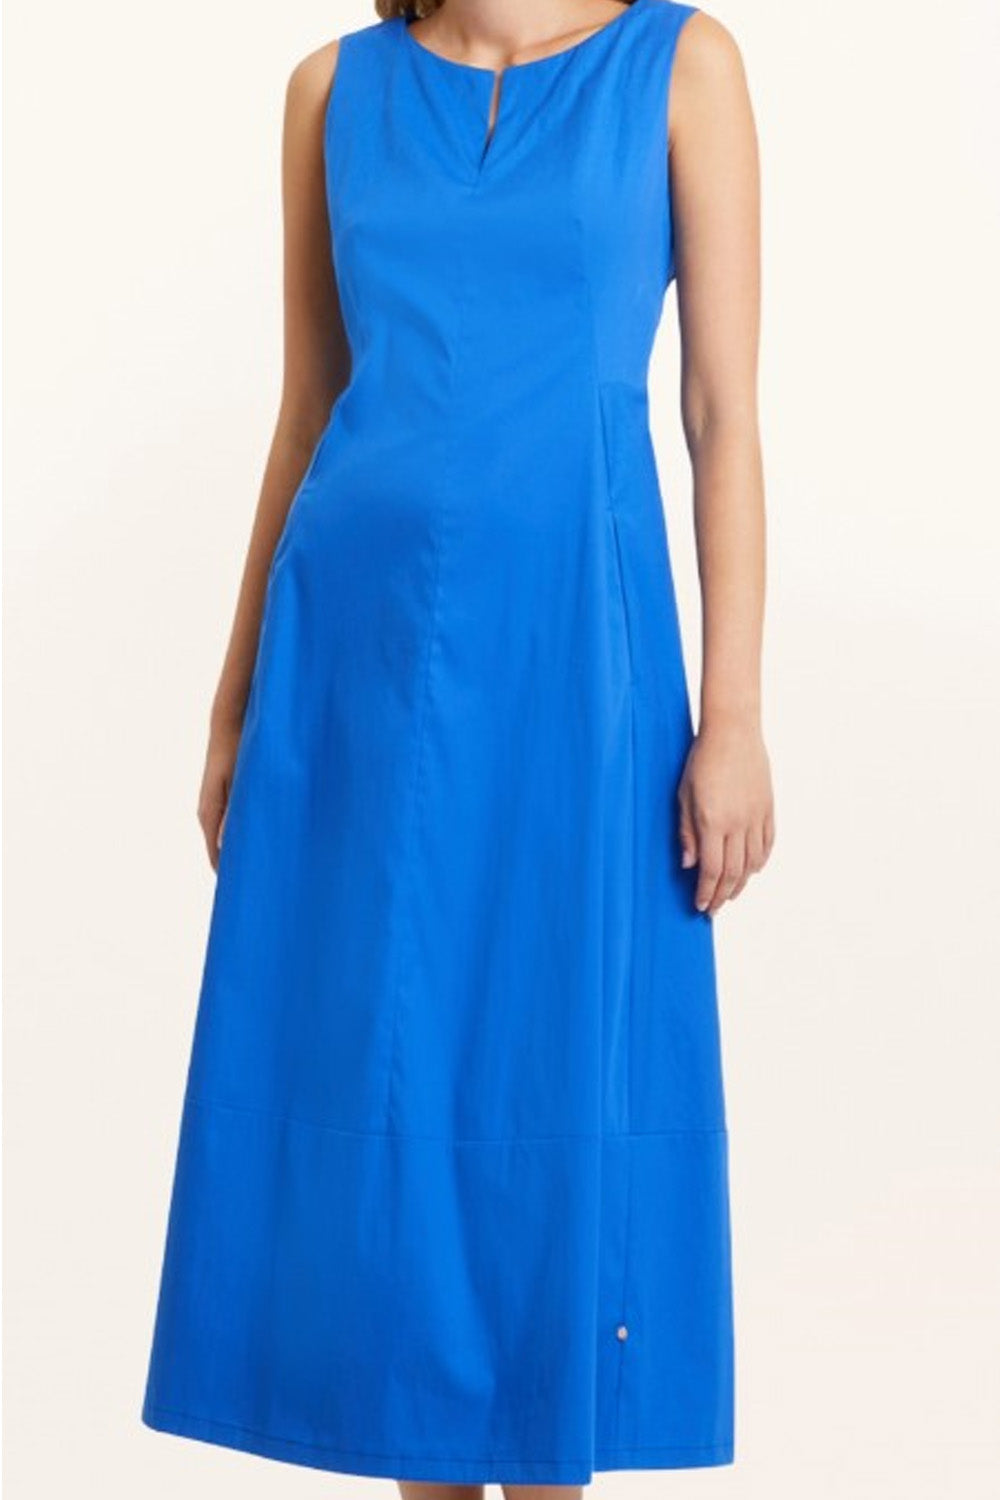 Primitive Blue Dress